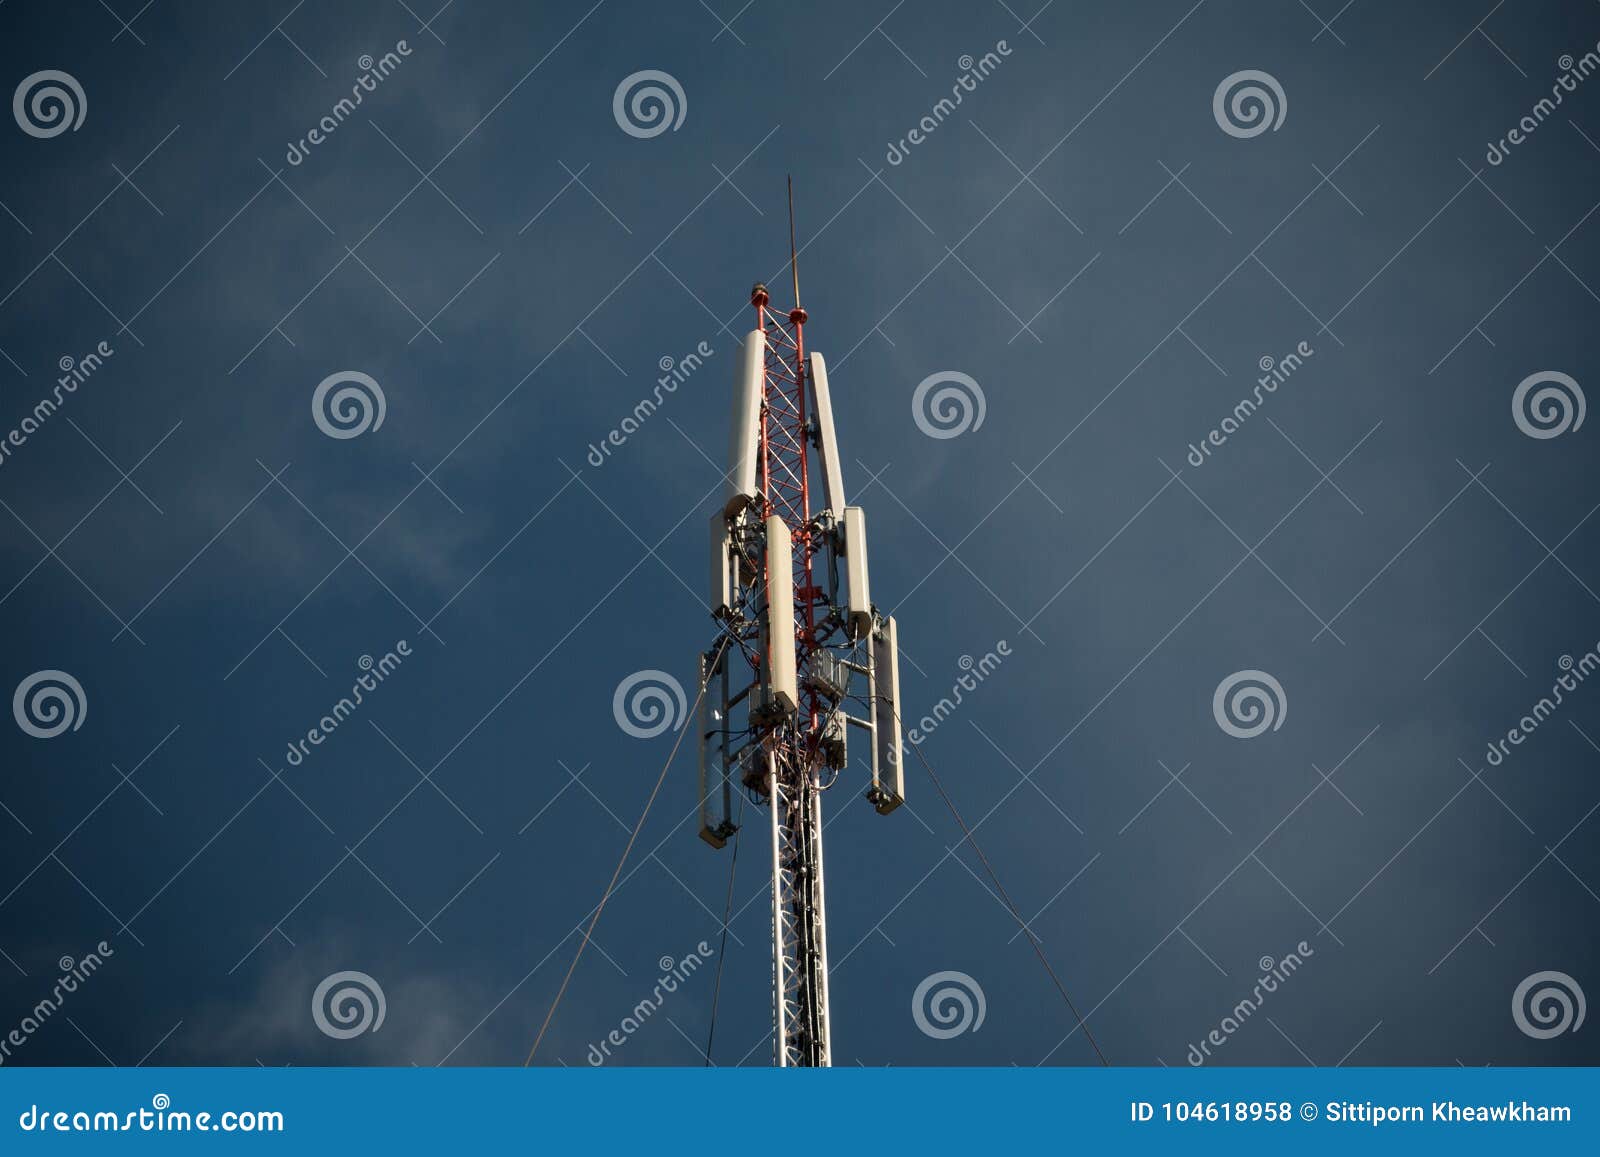 Telecom Blue Sky Background Stock Photo - Image of receiver ...